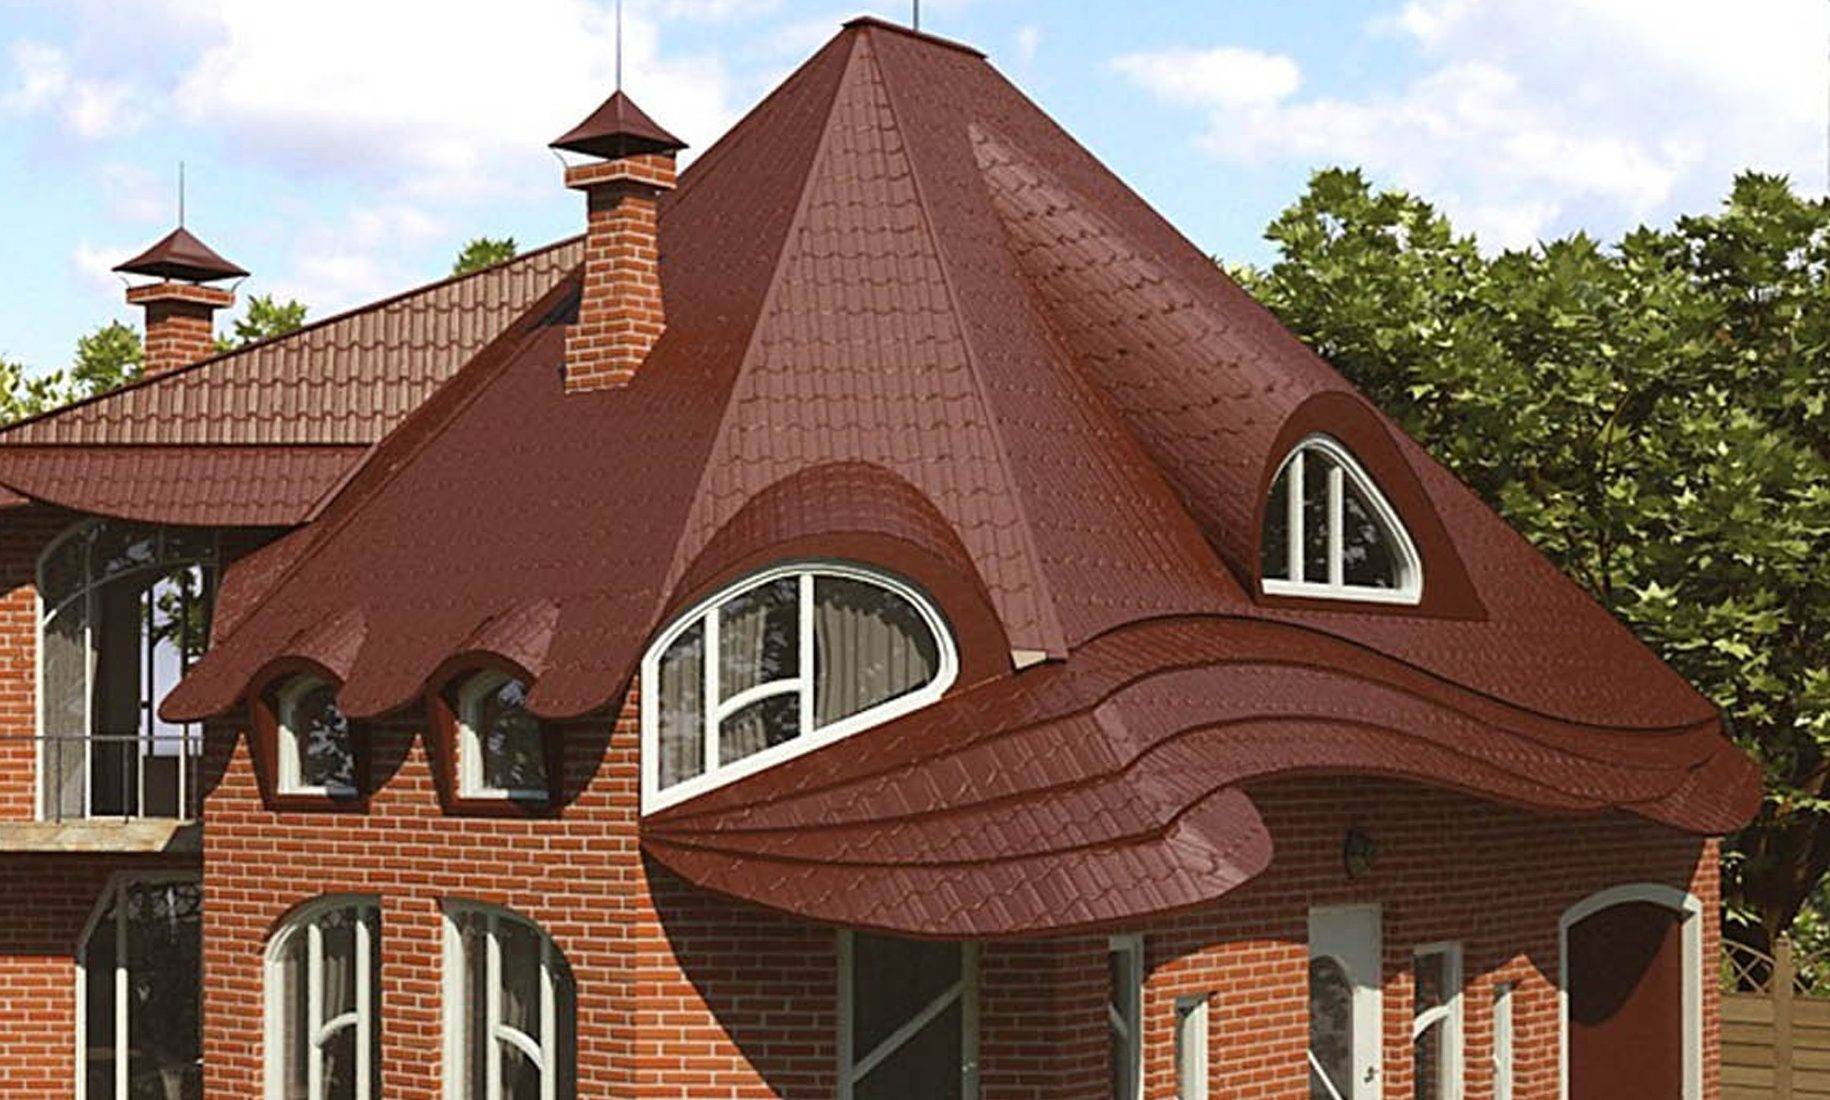 Виды крыш частных домов по конструкции и геометрическим формам